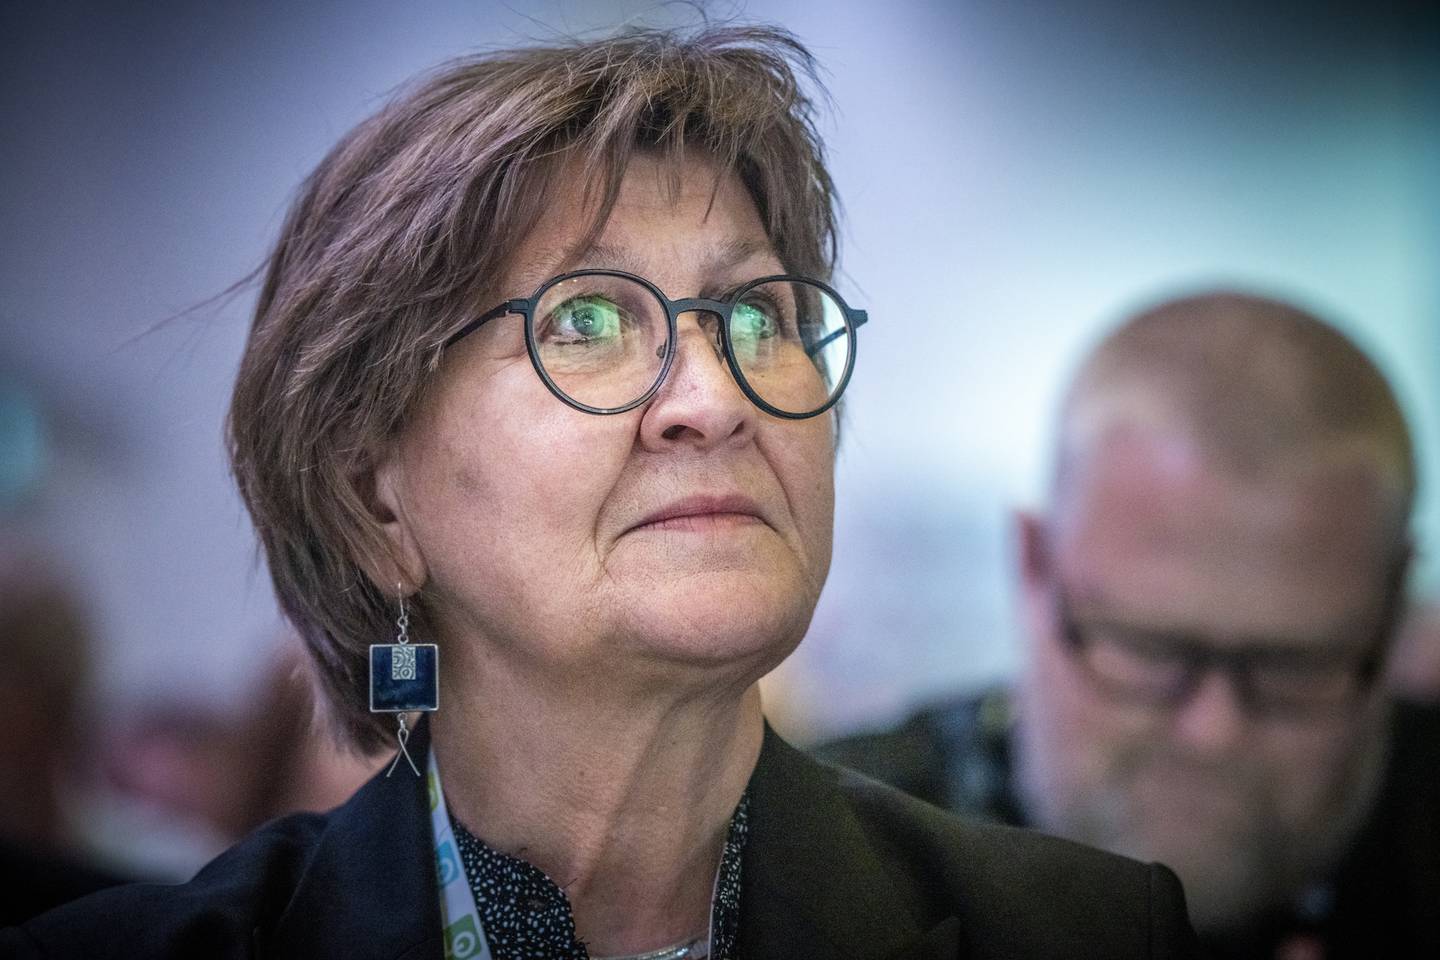 Fagforbundets leder Mette Nord tar til orde for flere faste jobber i kommunene. Det gjør hun rett i.